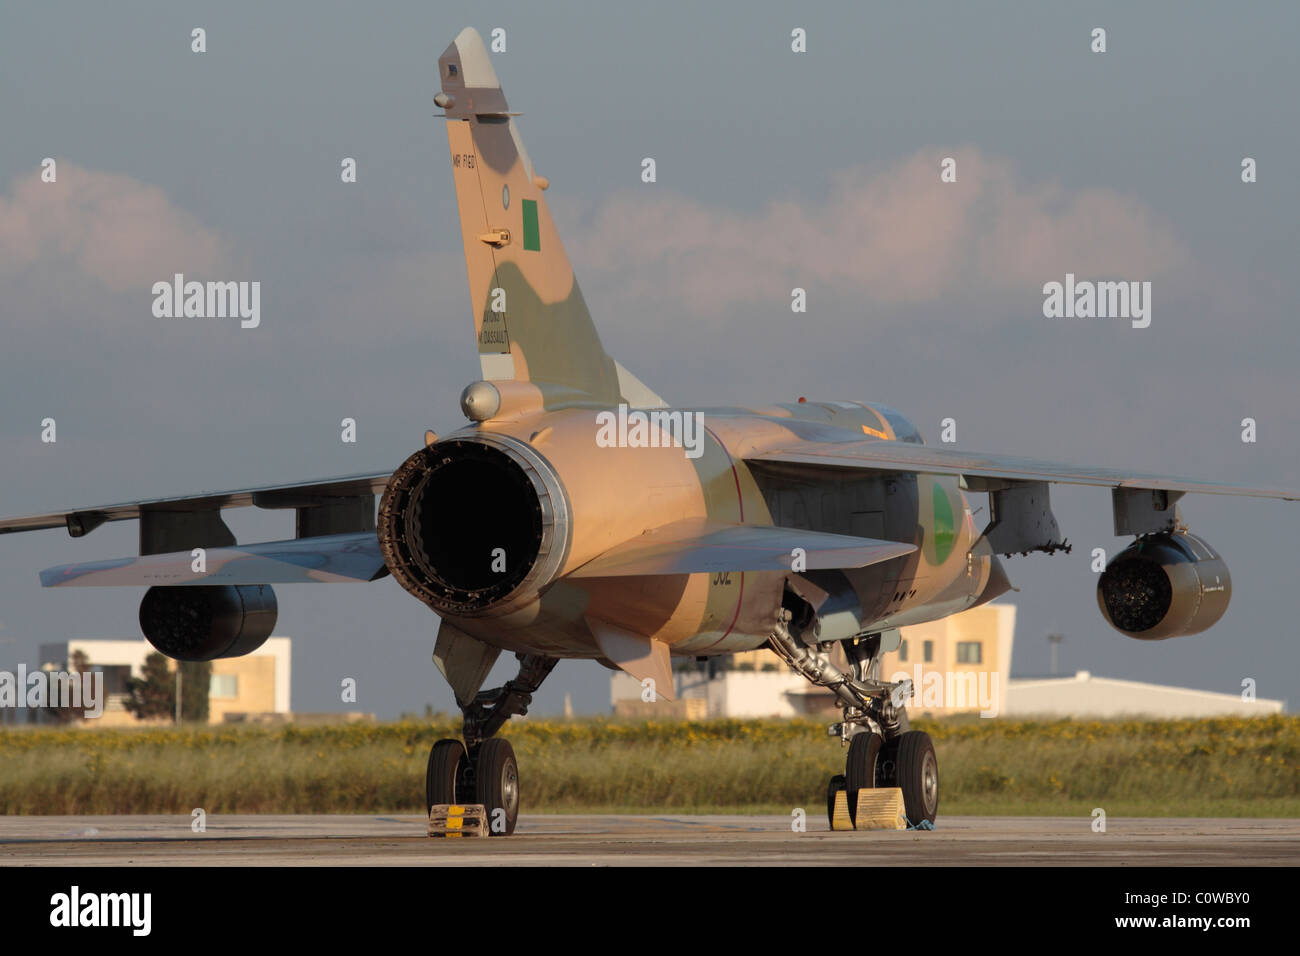 Uno dei due Libyan Air Force Mirage F1s i cui piloti si rifugiarono a Malta il 21 febbraio 2011 durante la rivolta contro Muammar Gheddafi. Foto Stock